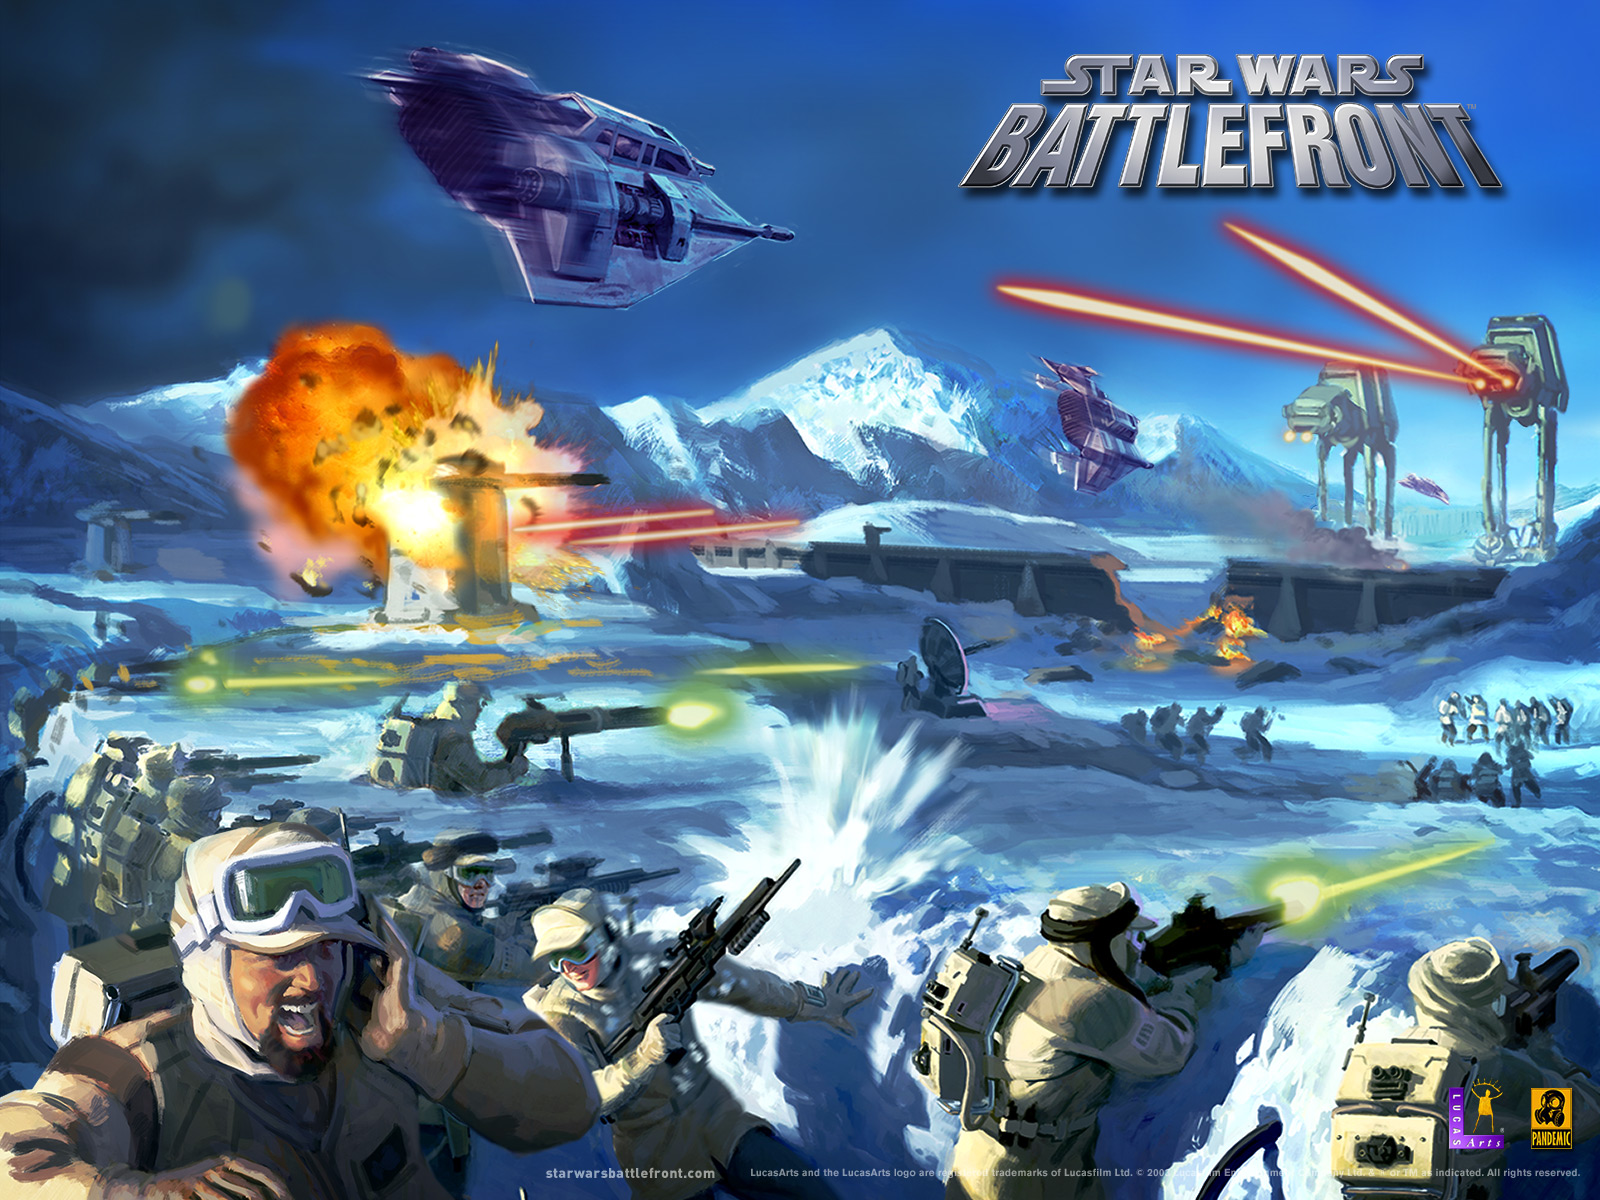 Star Wars: Battlefront (2004) promotional art